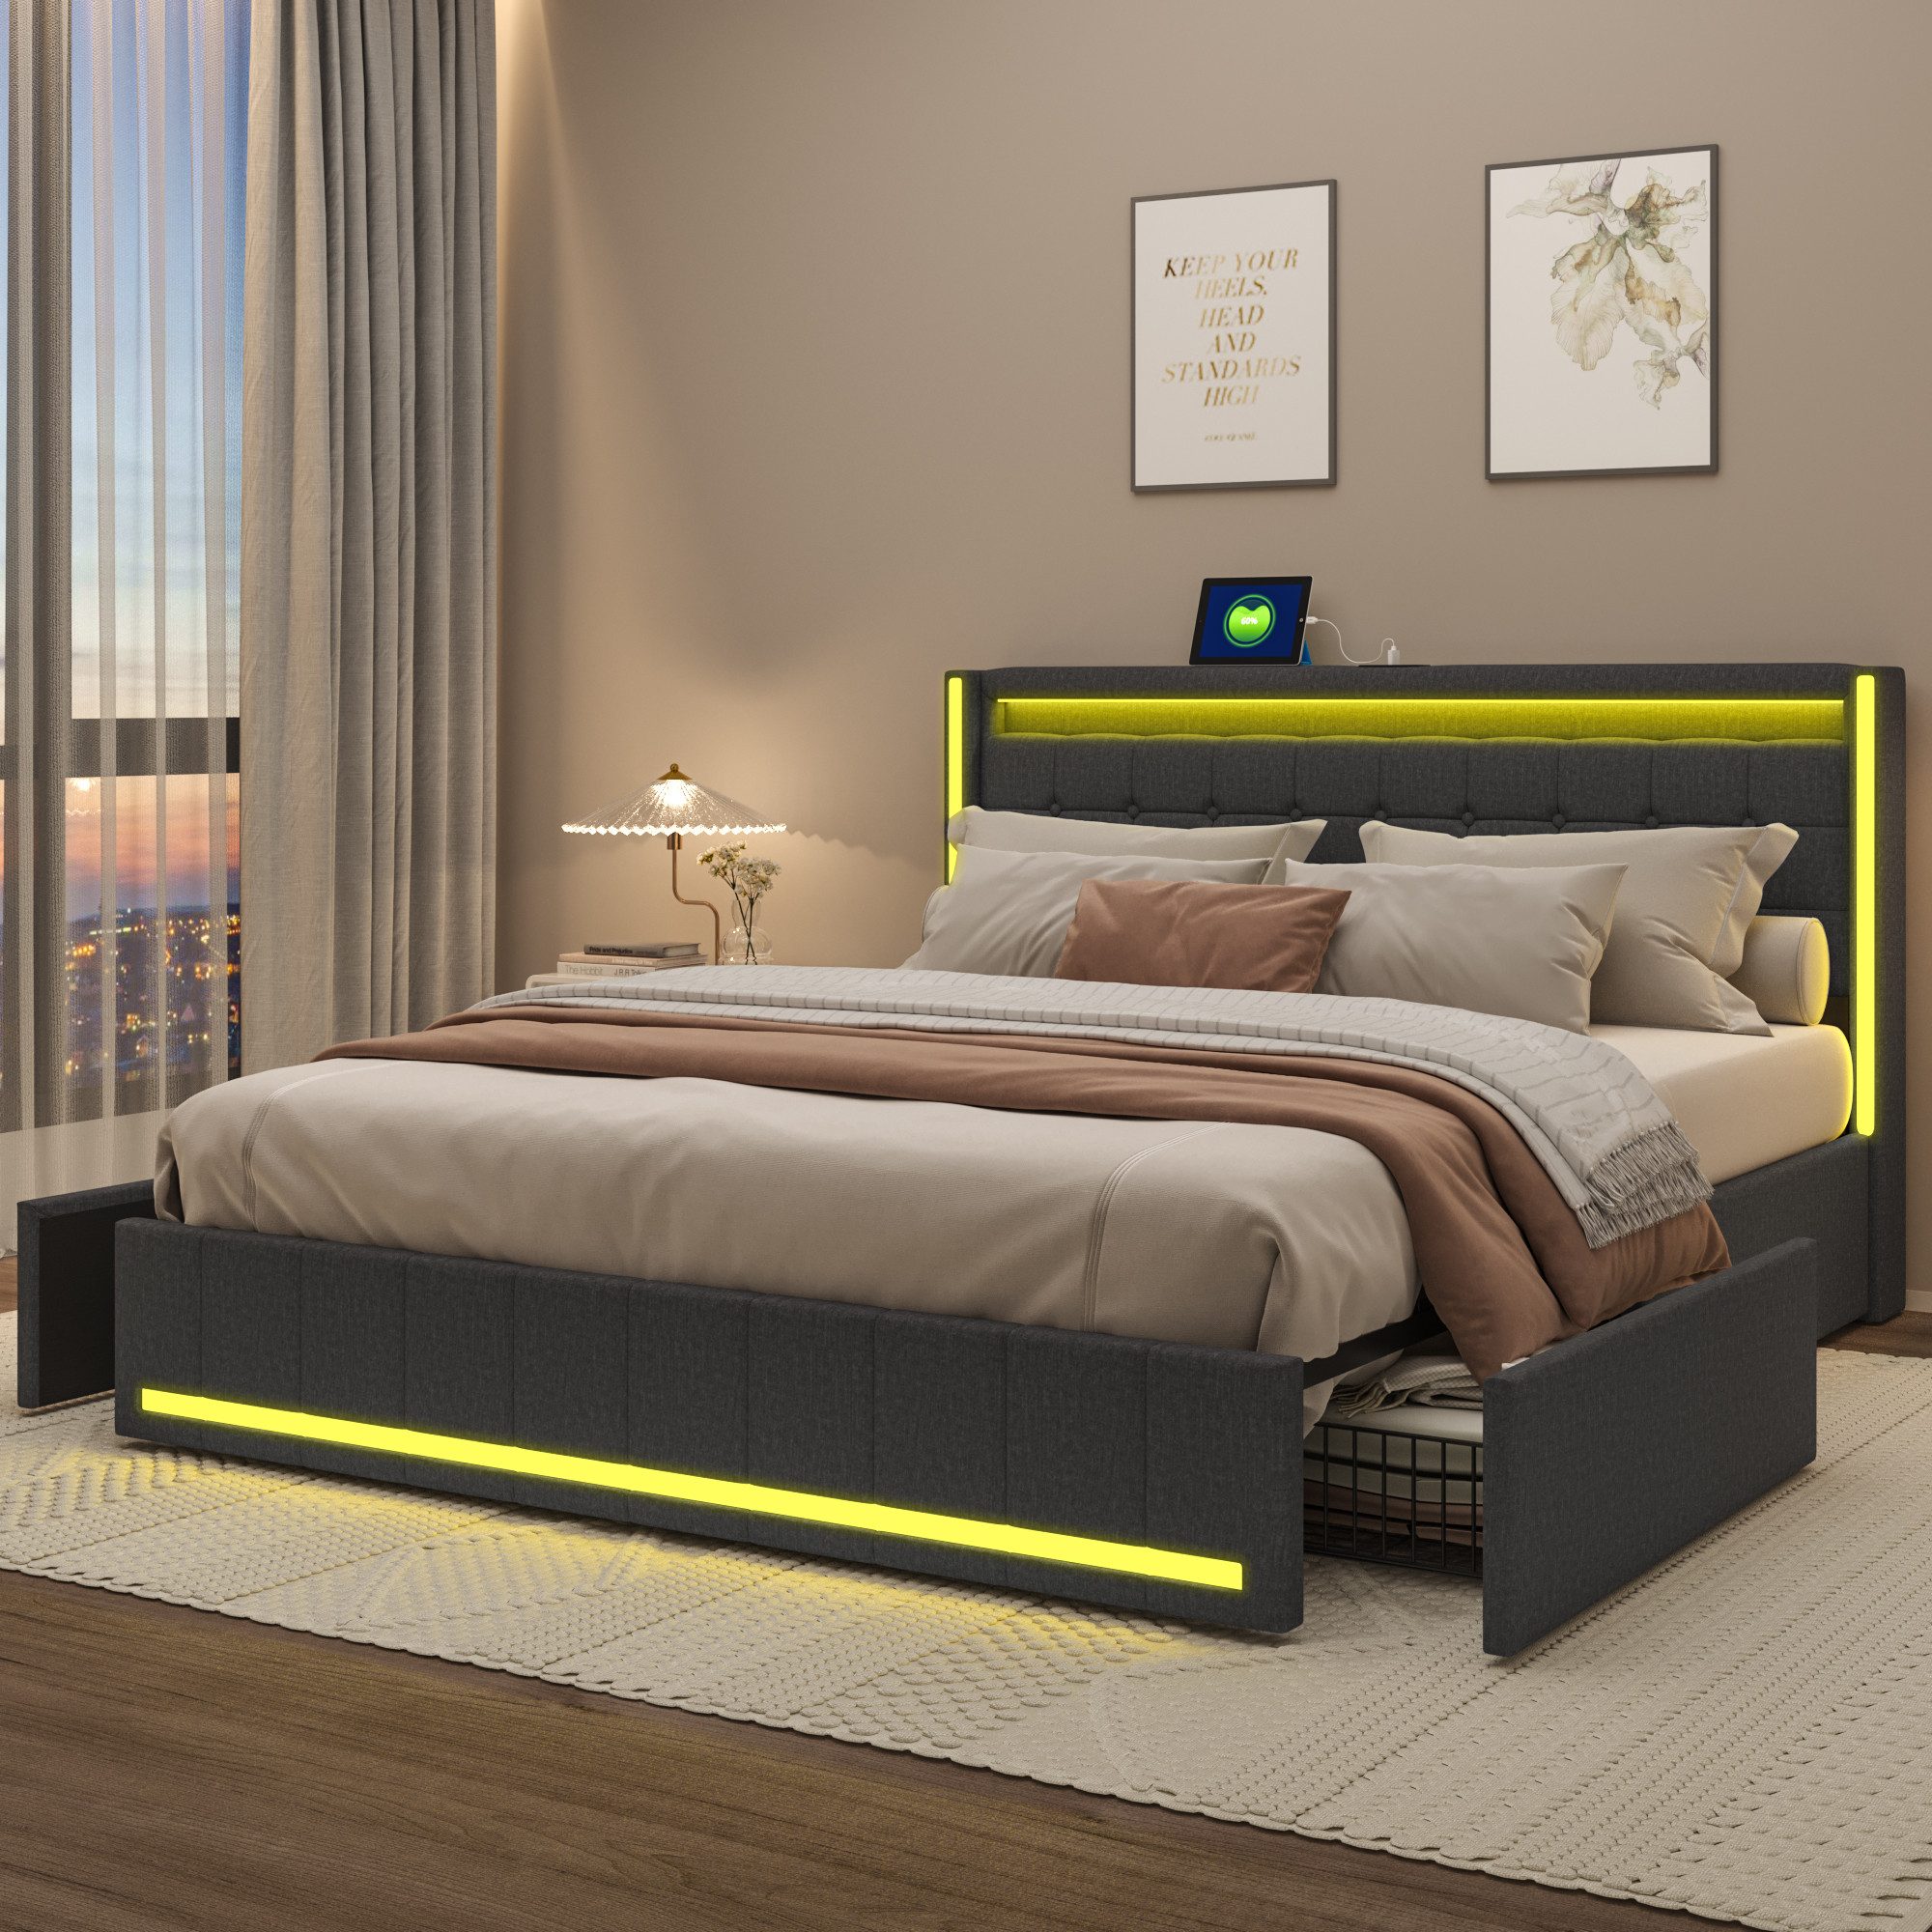 NMonet Polsterbett Doppelbett Stauraumbett (Geeignet für Jugendliche und Kinder), mit LED-Beleuchtung und USB/Type-C Anschlüssen, Leinen, 160x200cm